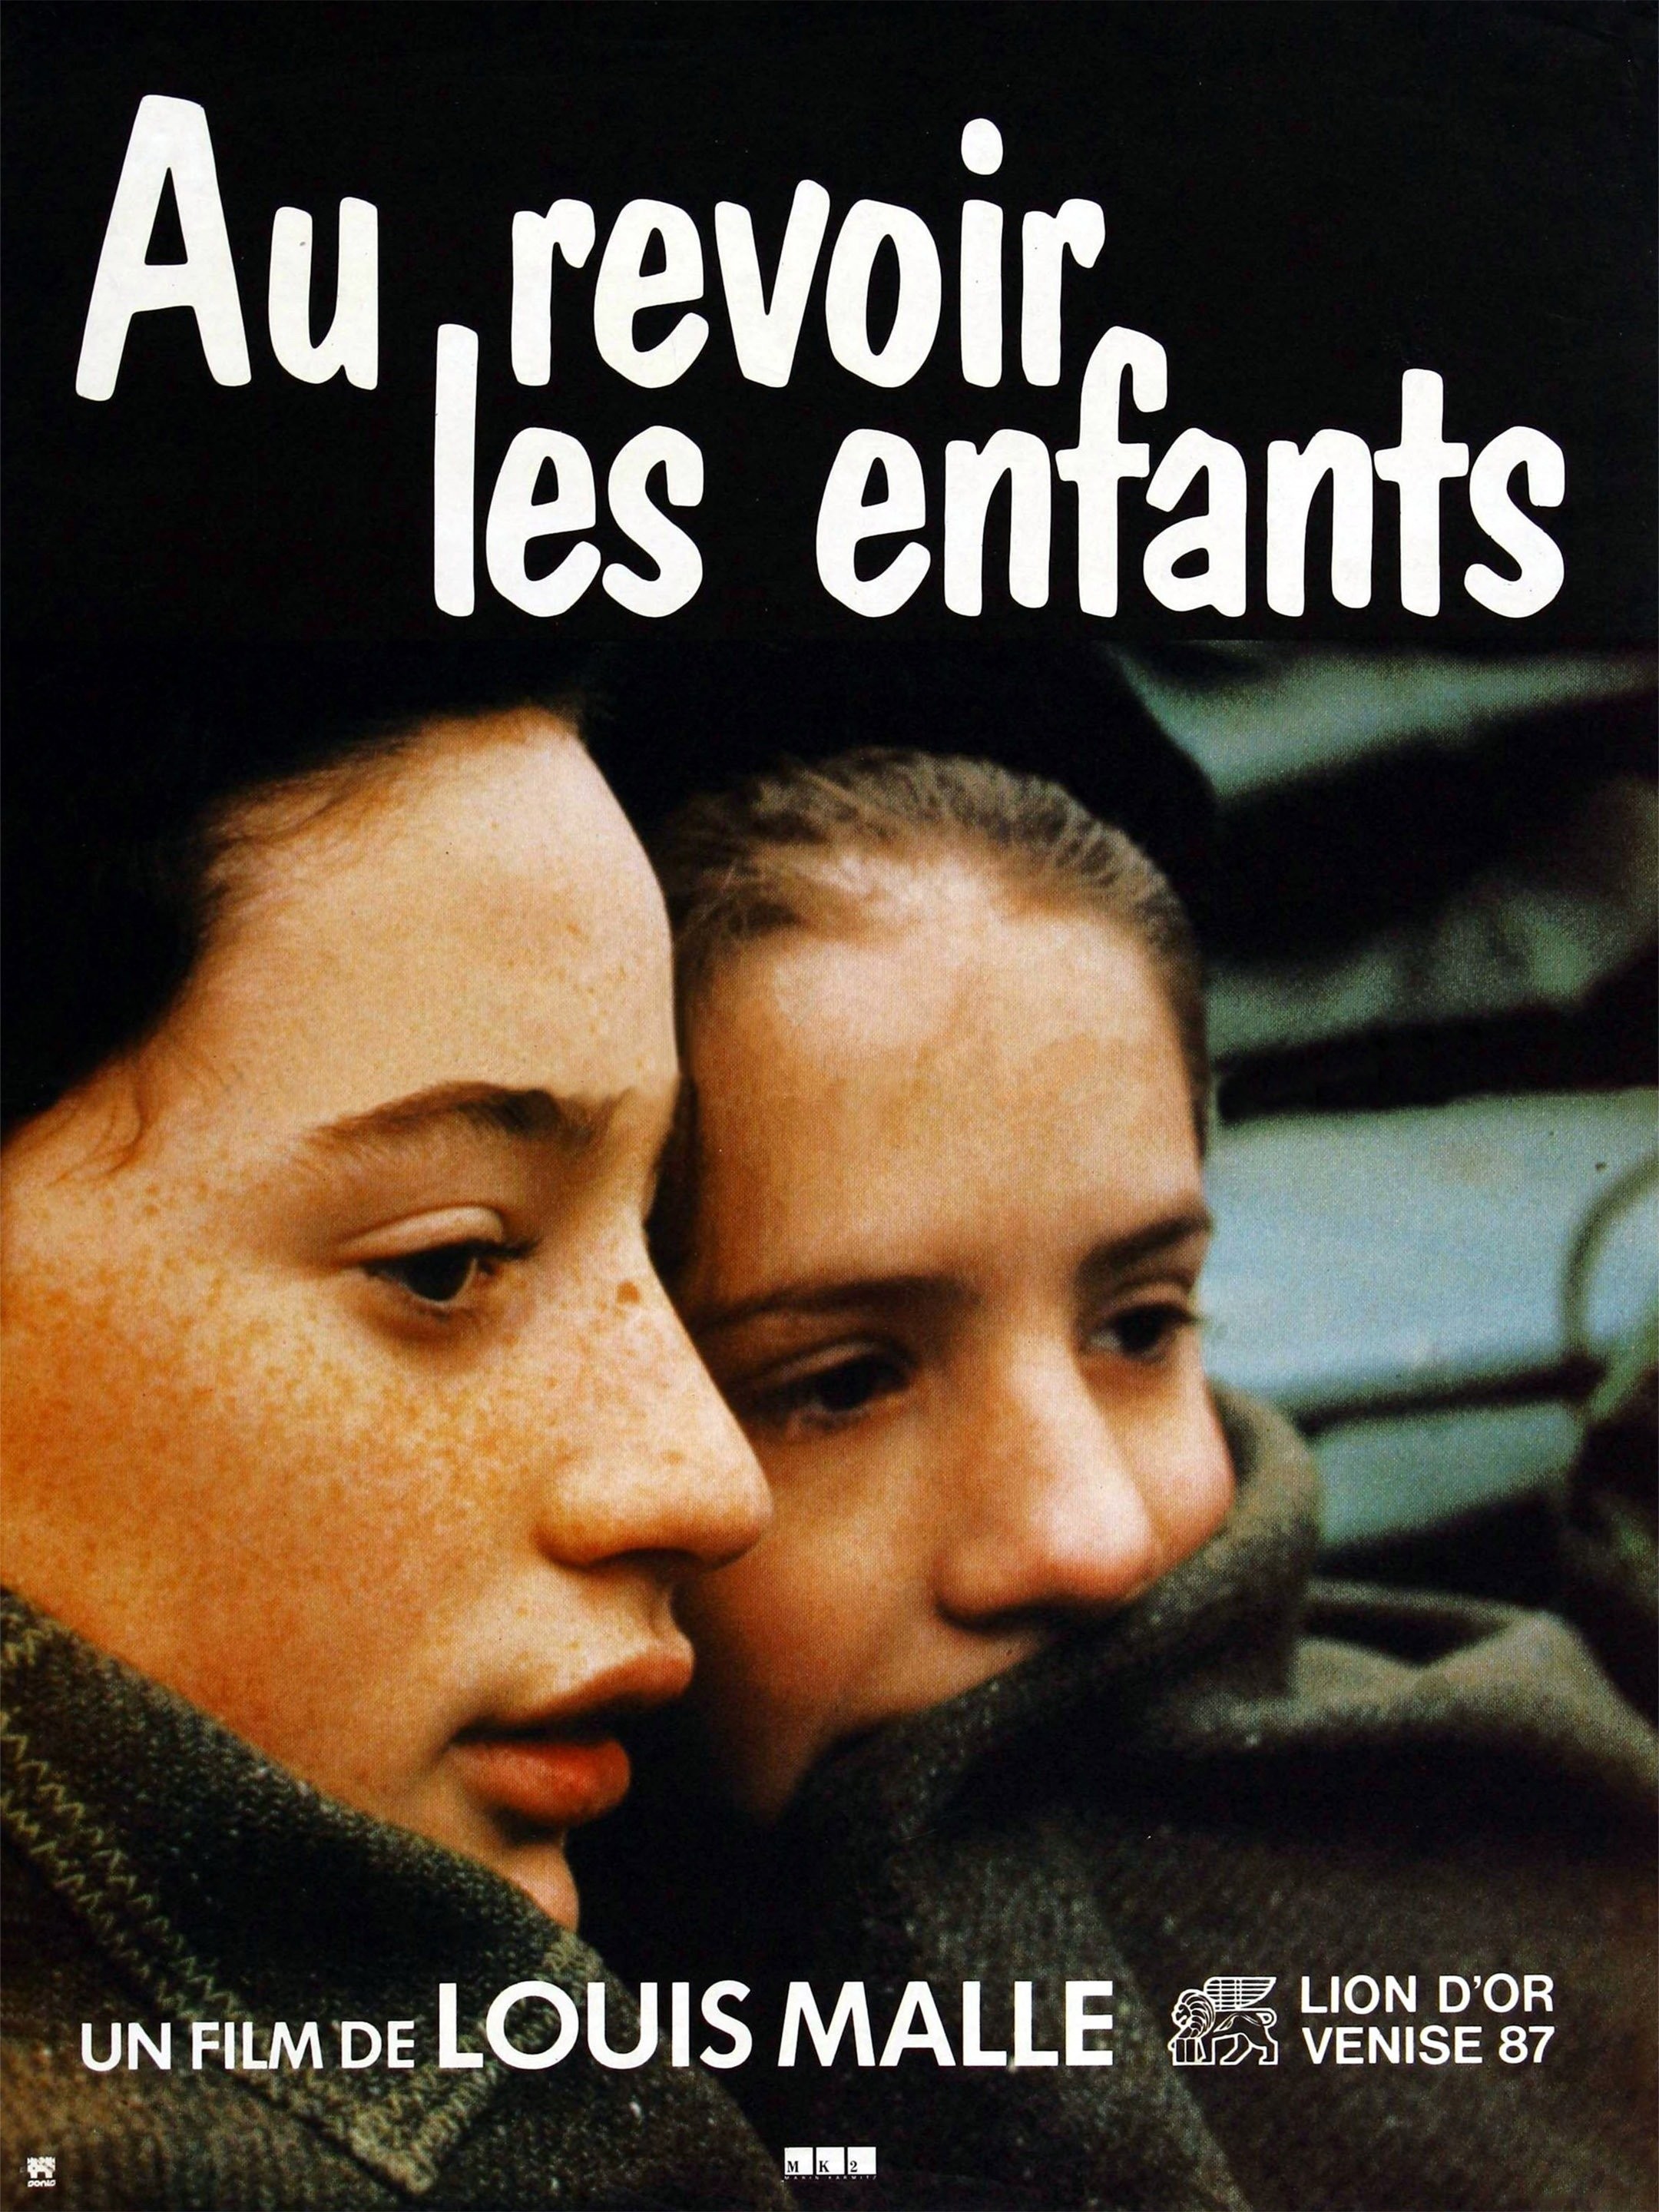 Au revoir les enfants (The Criterion Collection) [Blu-ray]